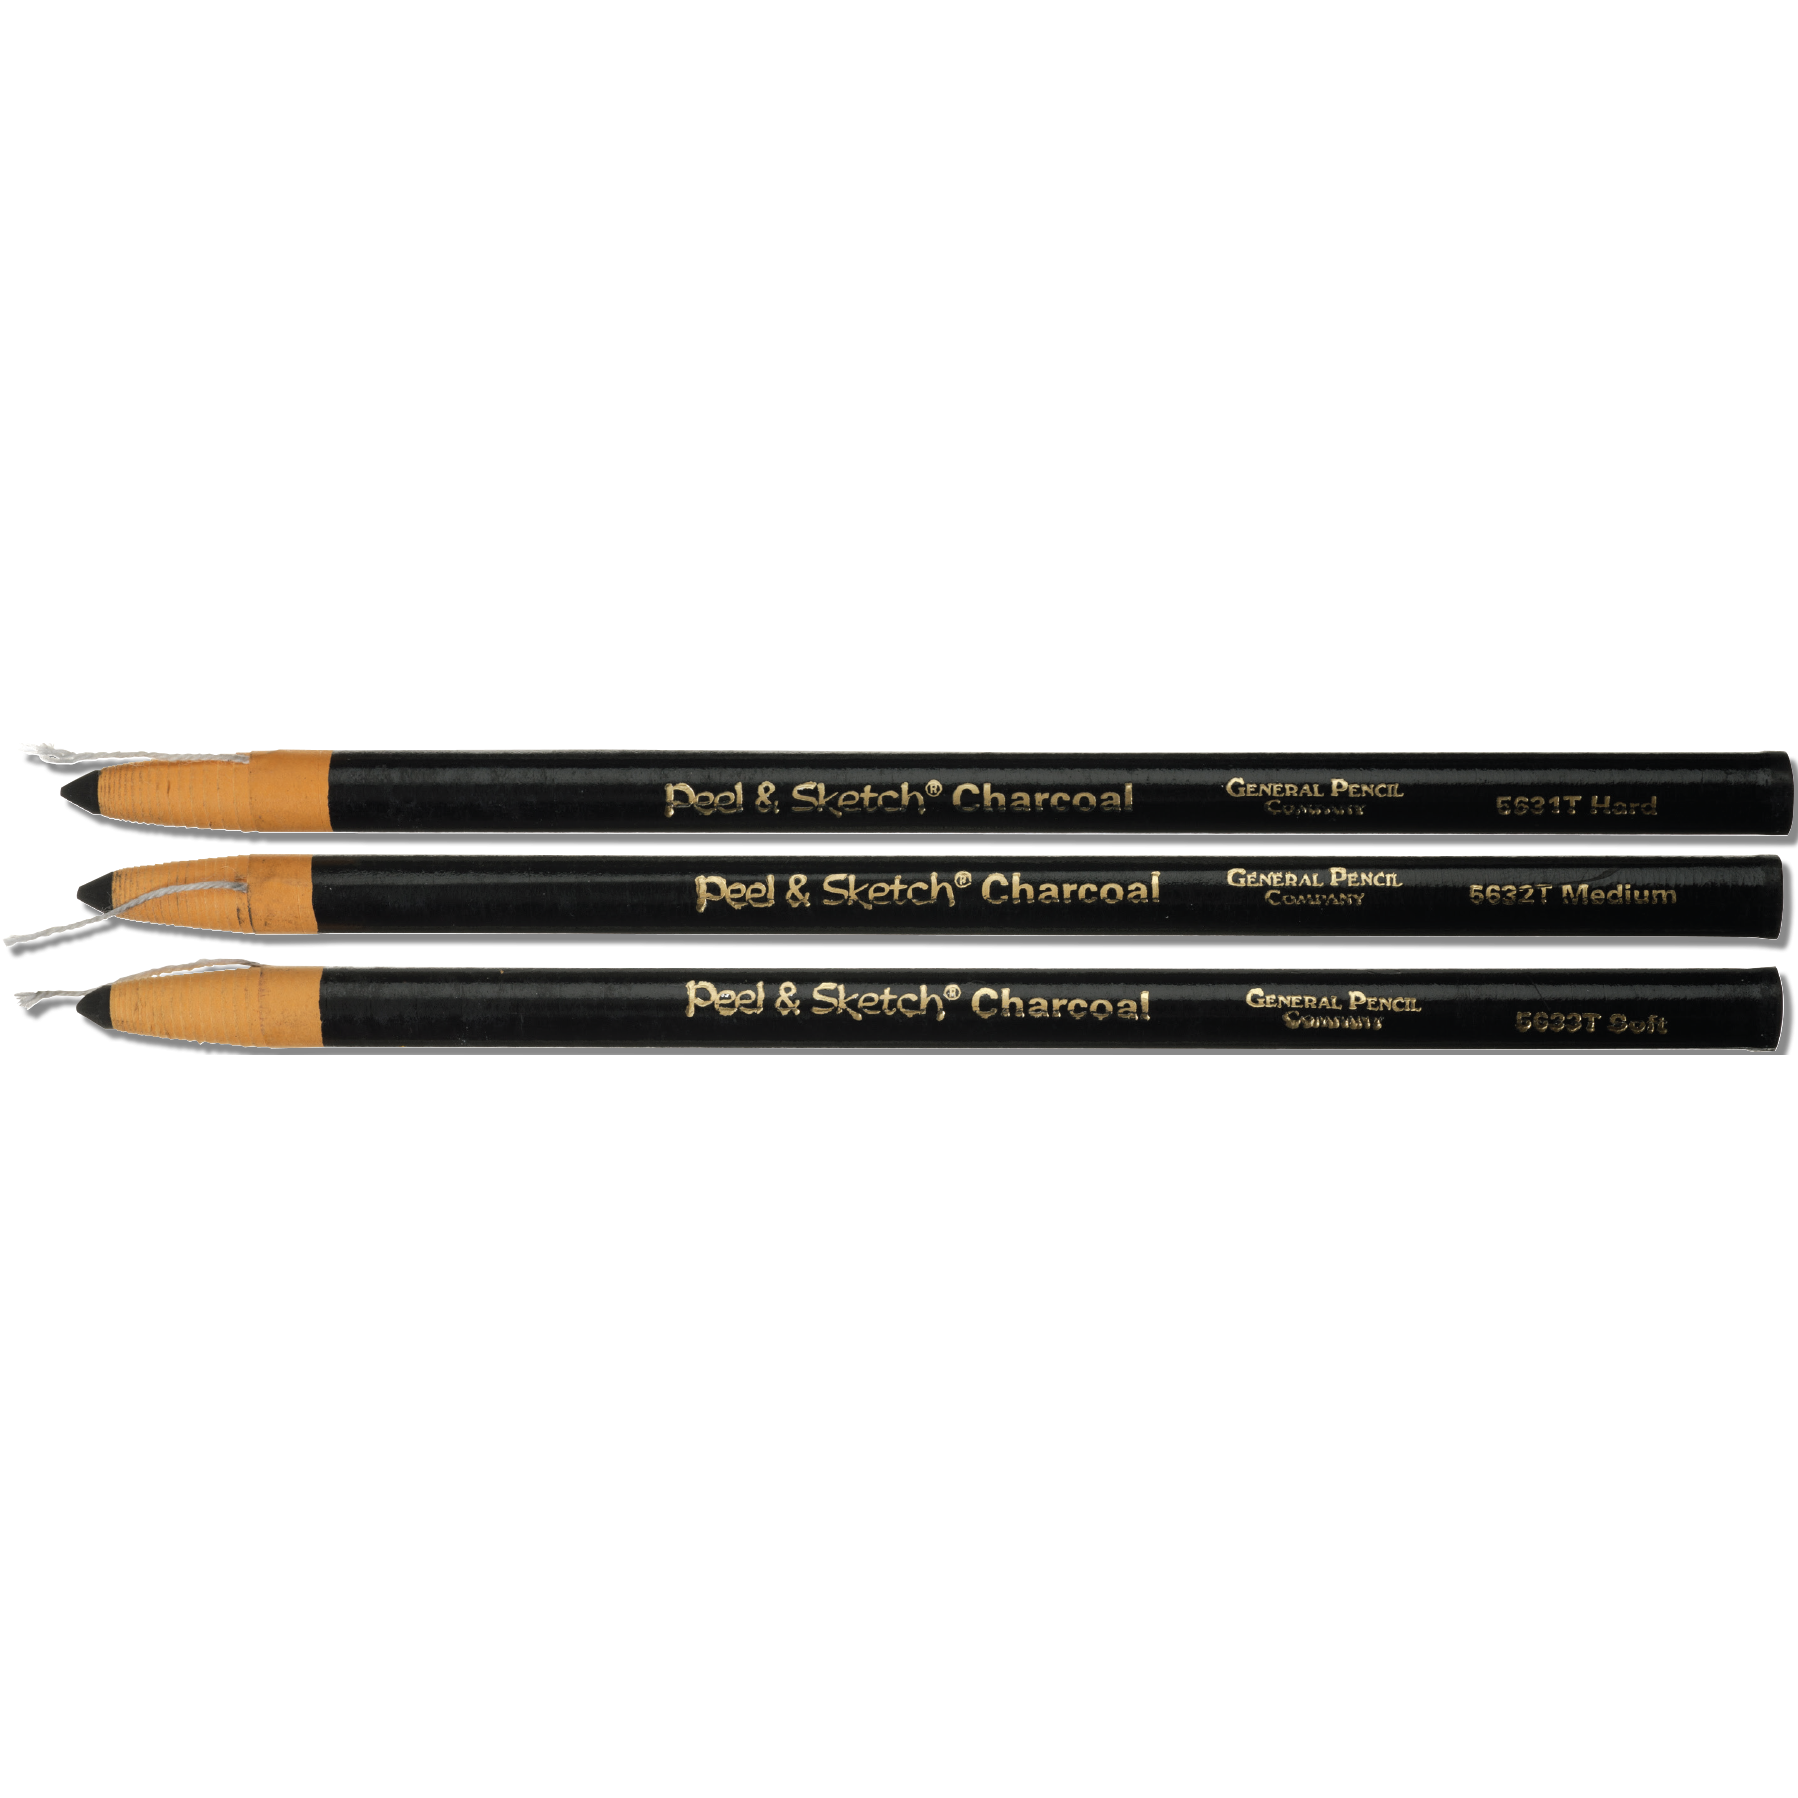 General Pencil Peel & Sketch Charcoal Pencil - Soft